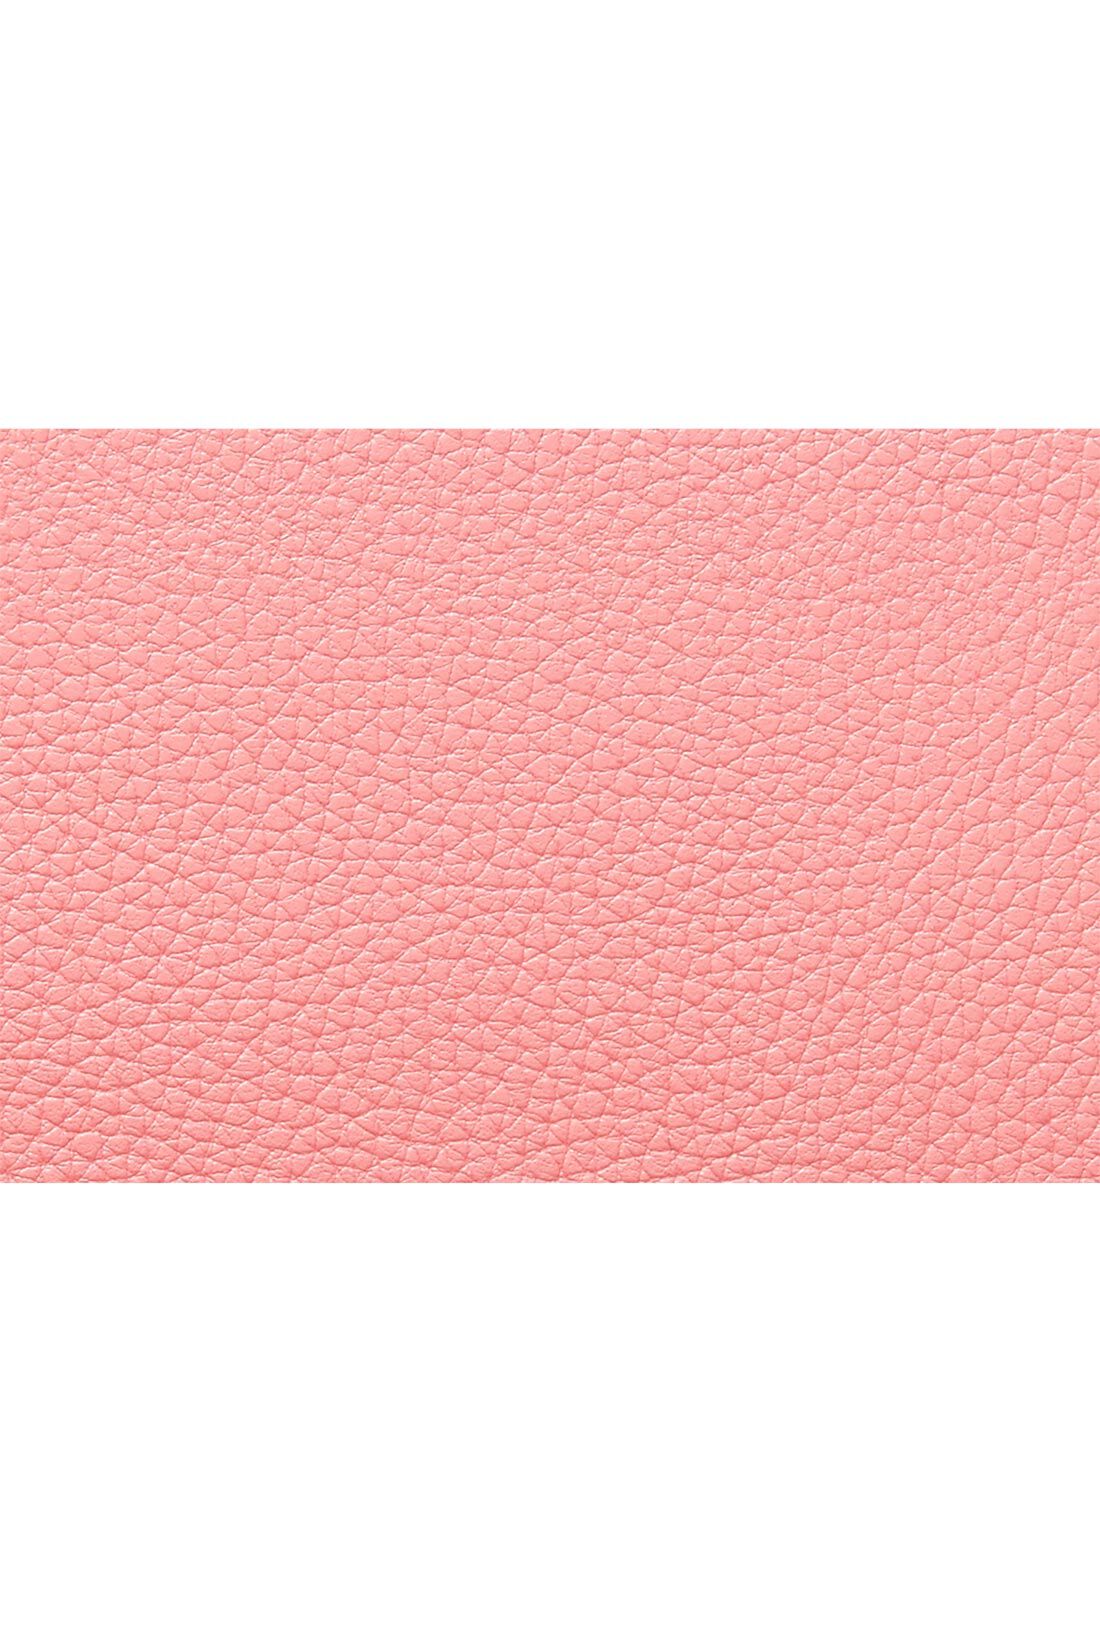 イディット|IEDIT[イディット]ワガママ企画　使いやすさをとことん追求 エレガントに映えるローズピンクの本革長財布〈ピンク〉